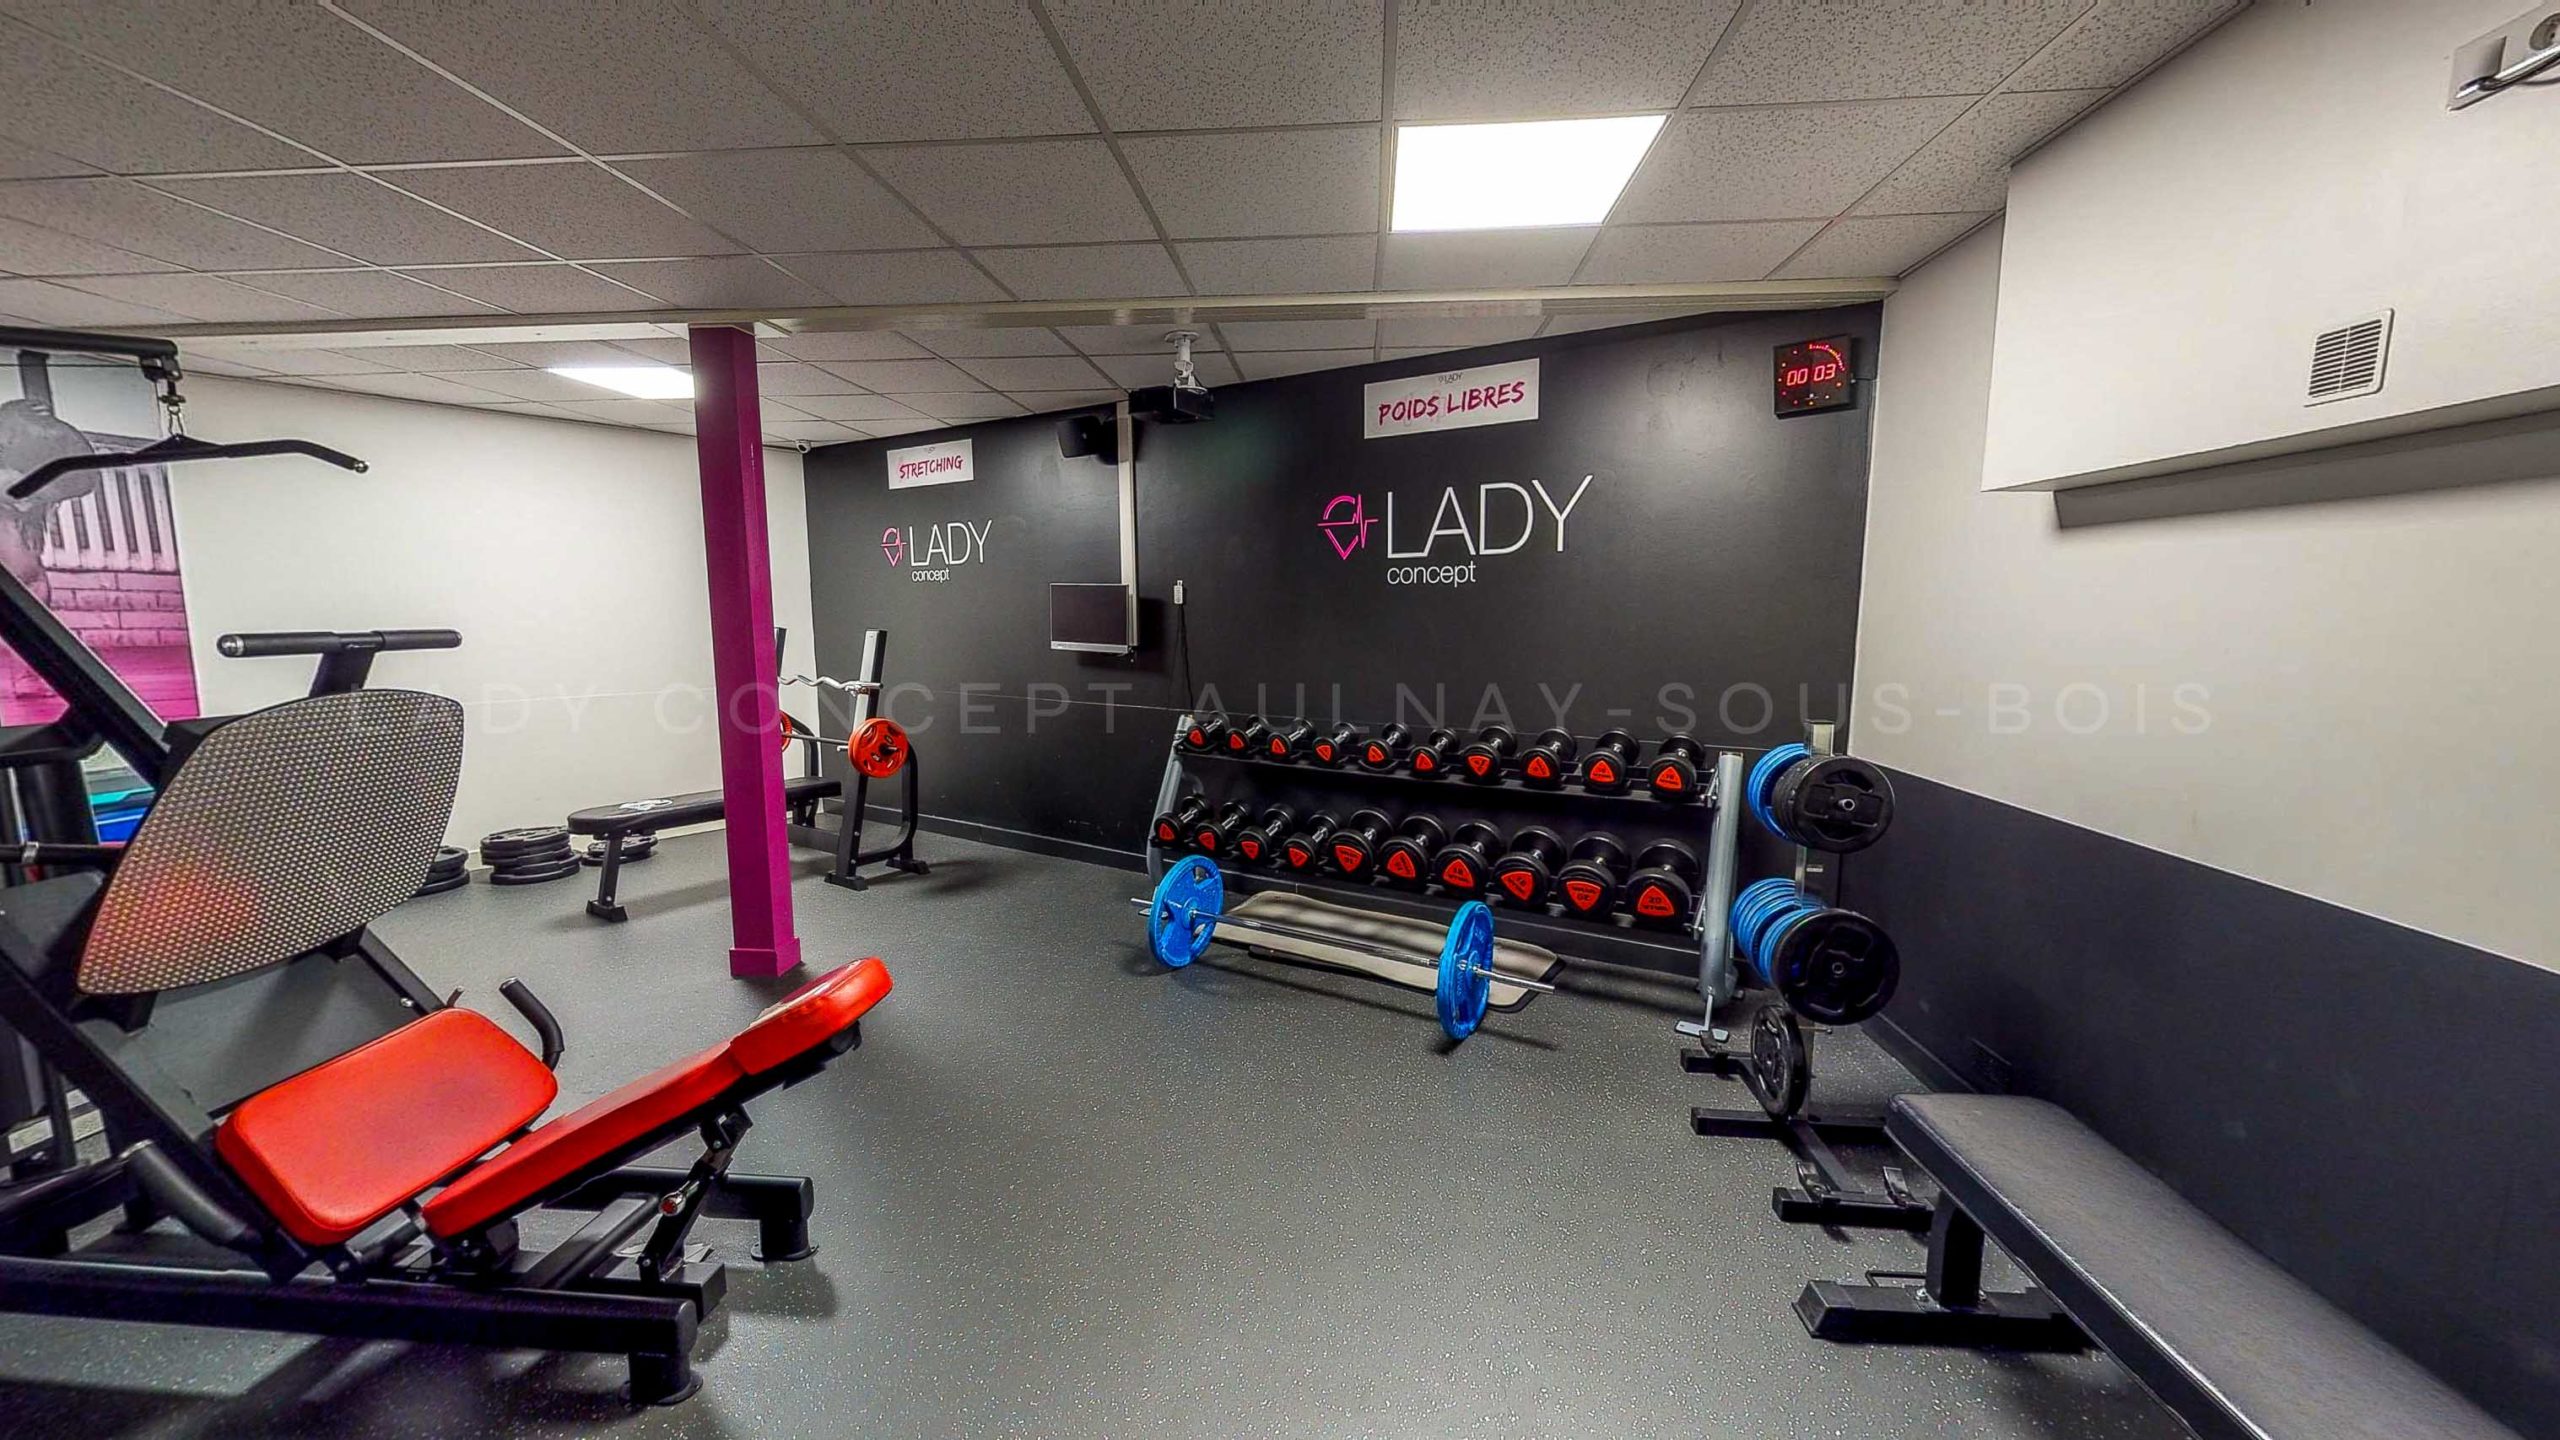 Salle de sport à Aulnay-Sous-Bois - Lady Concept